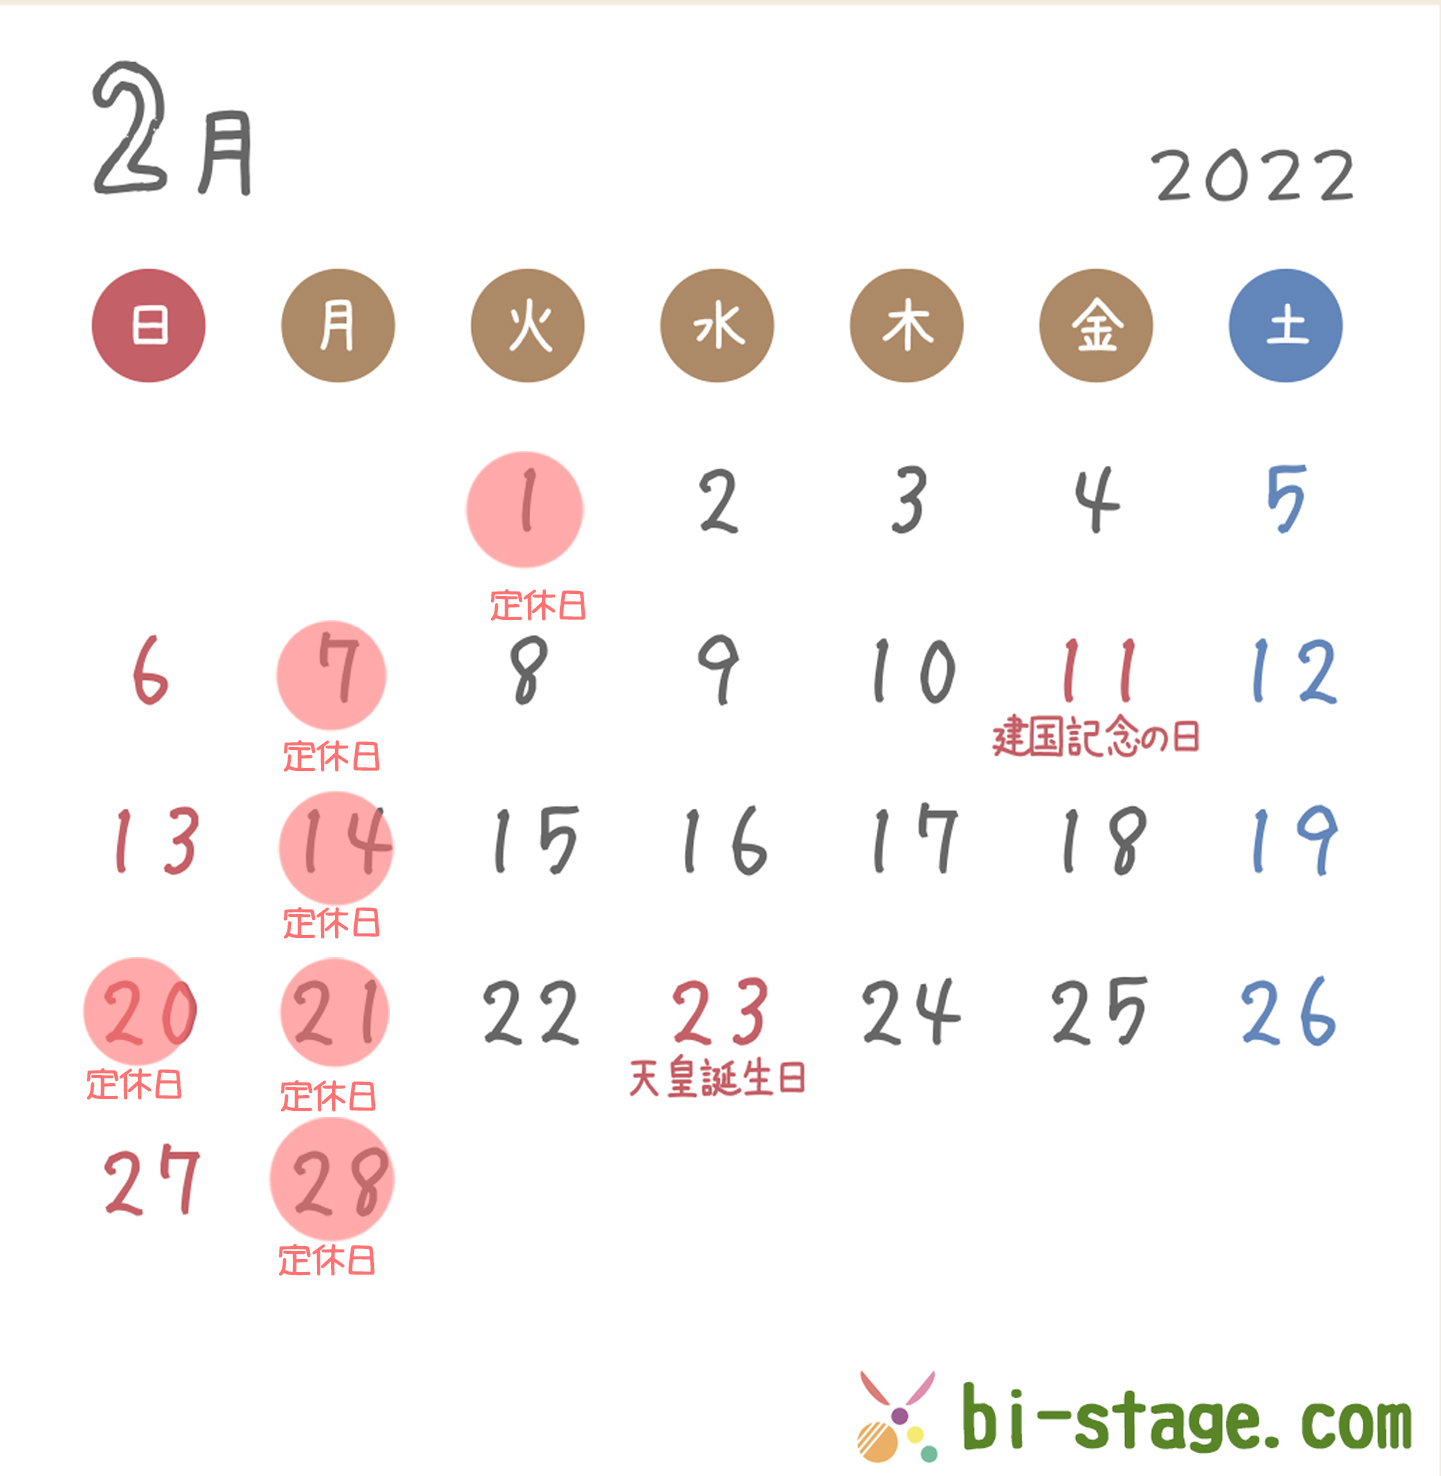 2022年2月カレンダー